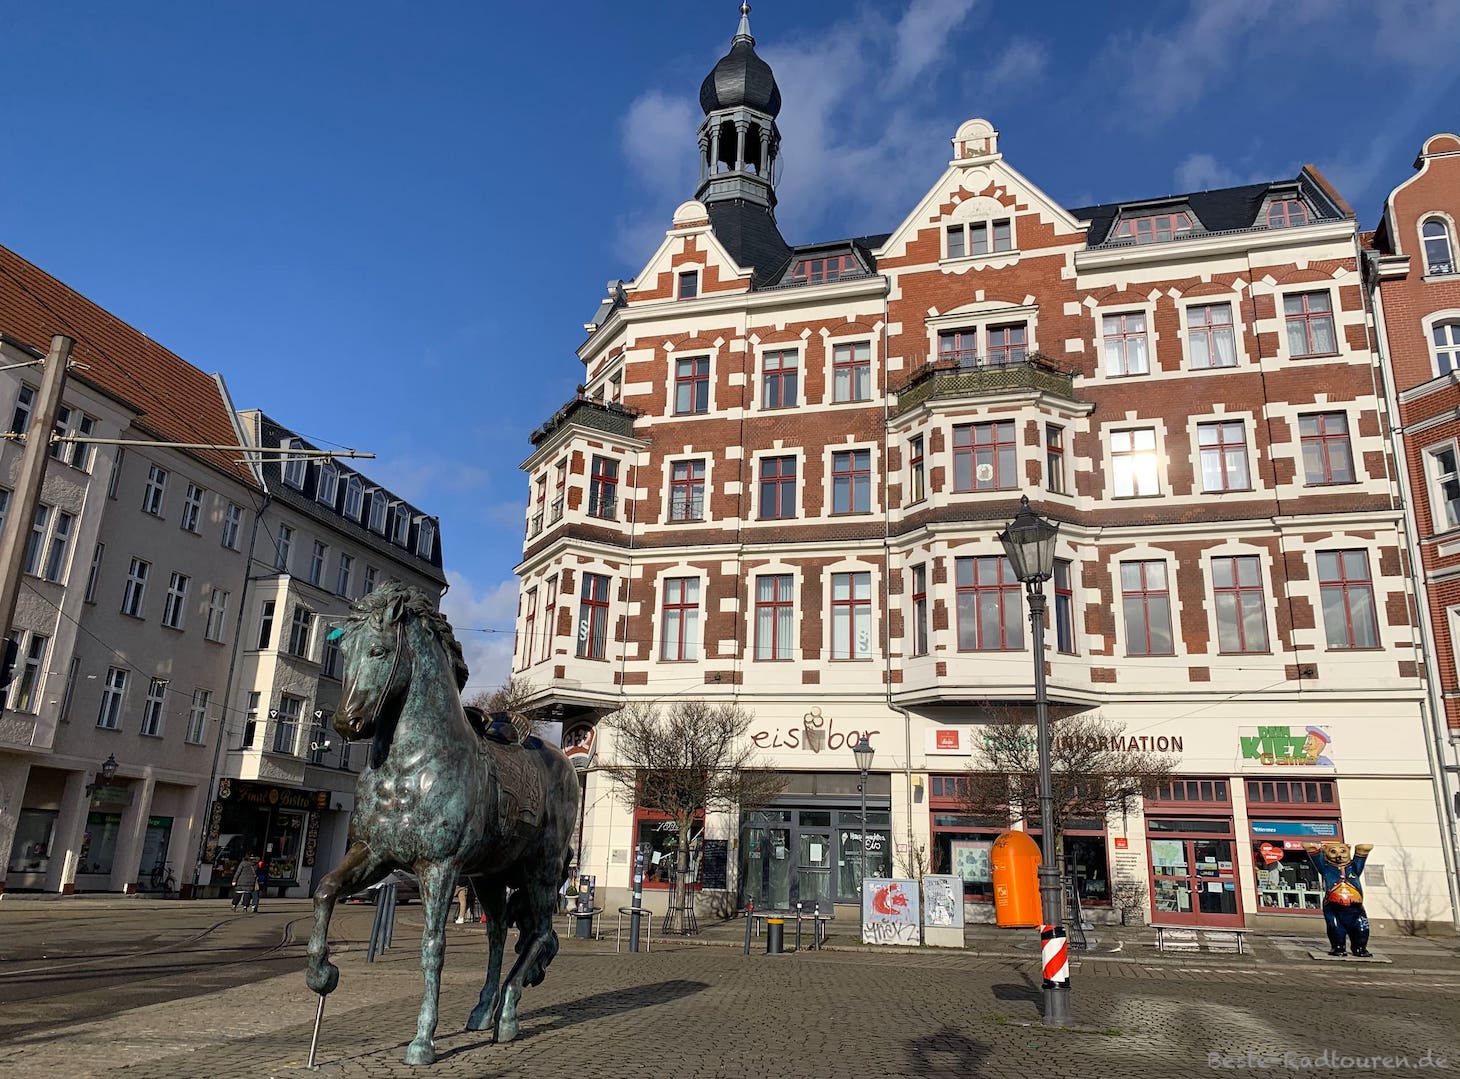 Schlossplatz im Zentrum von Köpenick: Tourismus-Information, Eisdiele, Pferdeskulptur